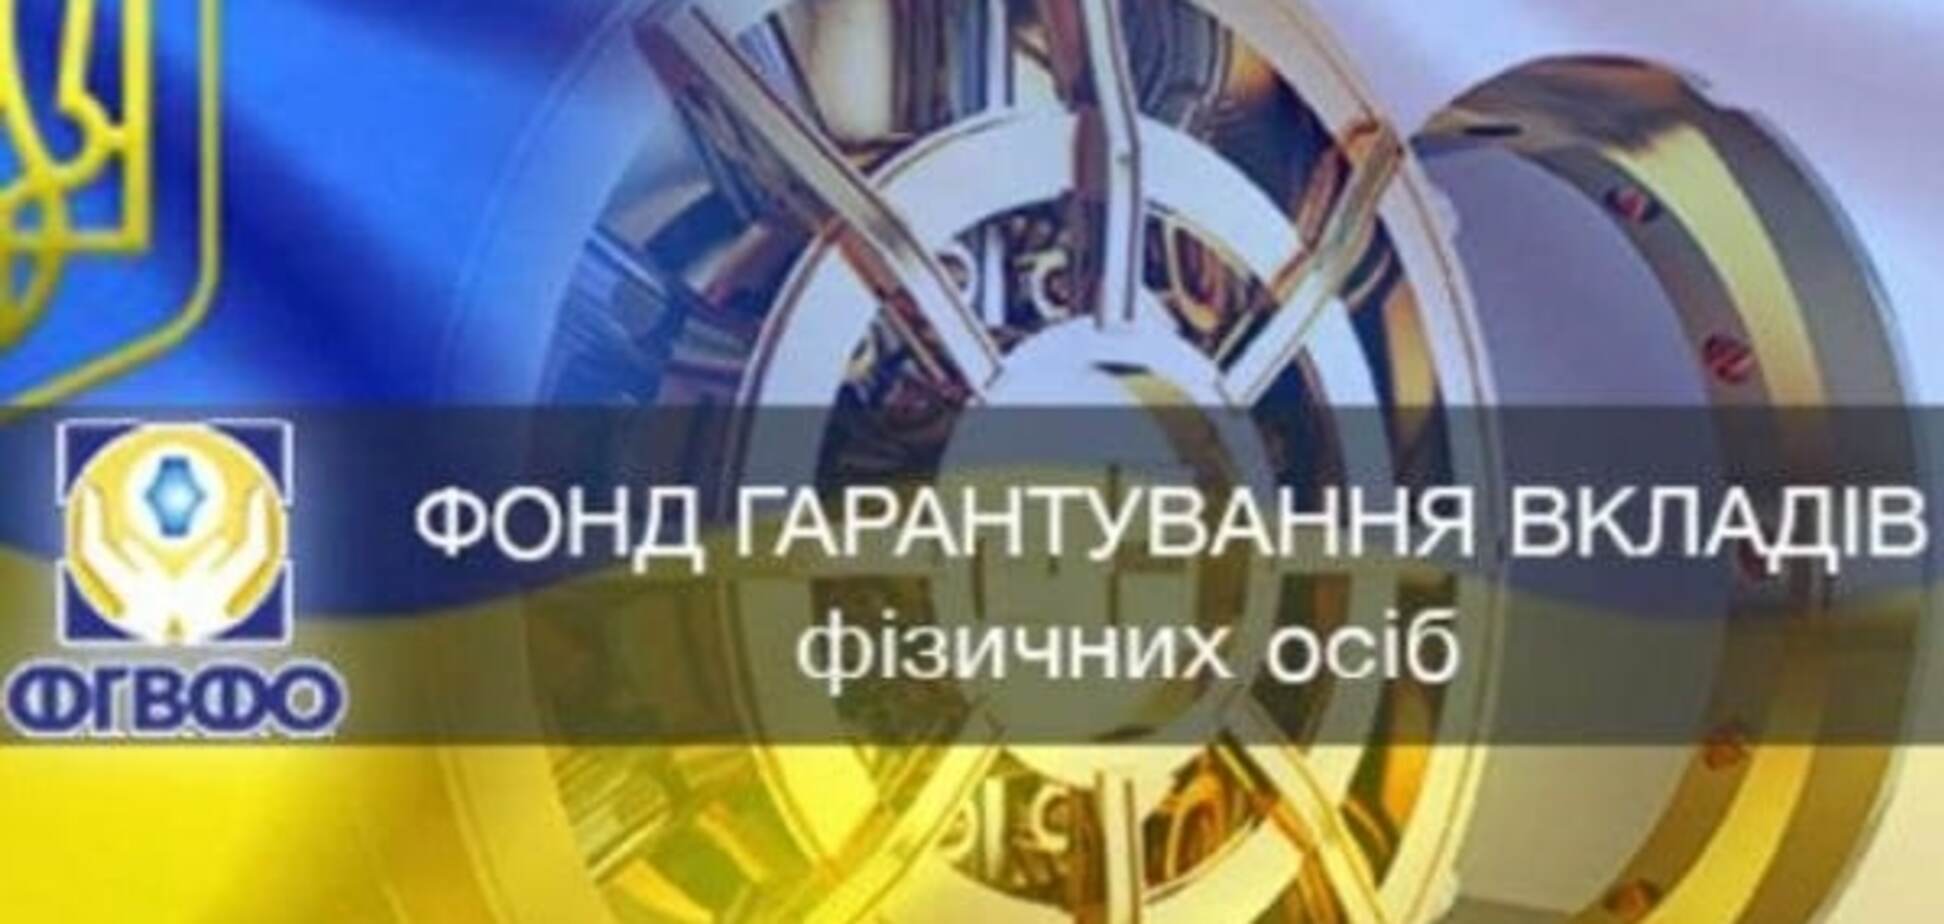 Через Фонд гарантирования на захваченный Донбасс перевели более 3 млрд грн - СМИ